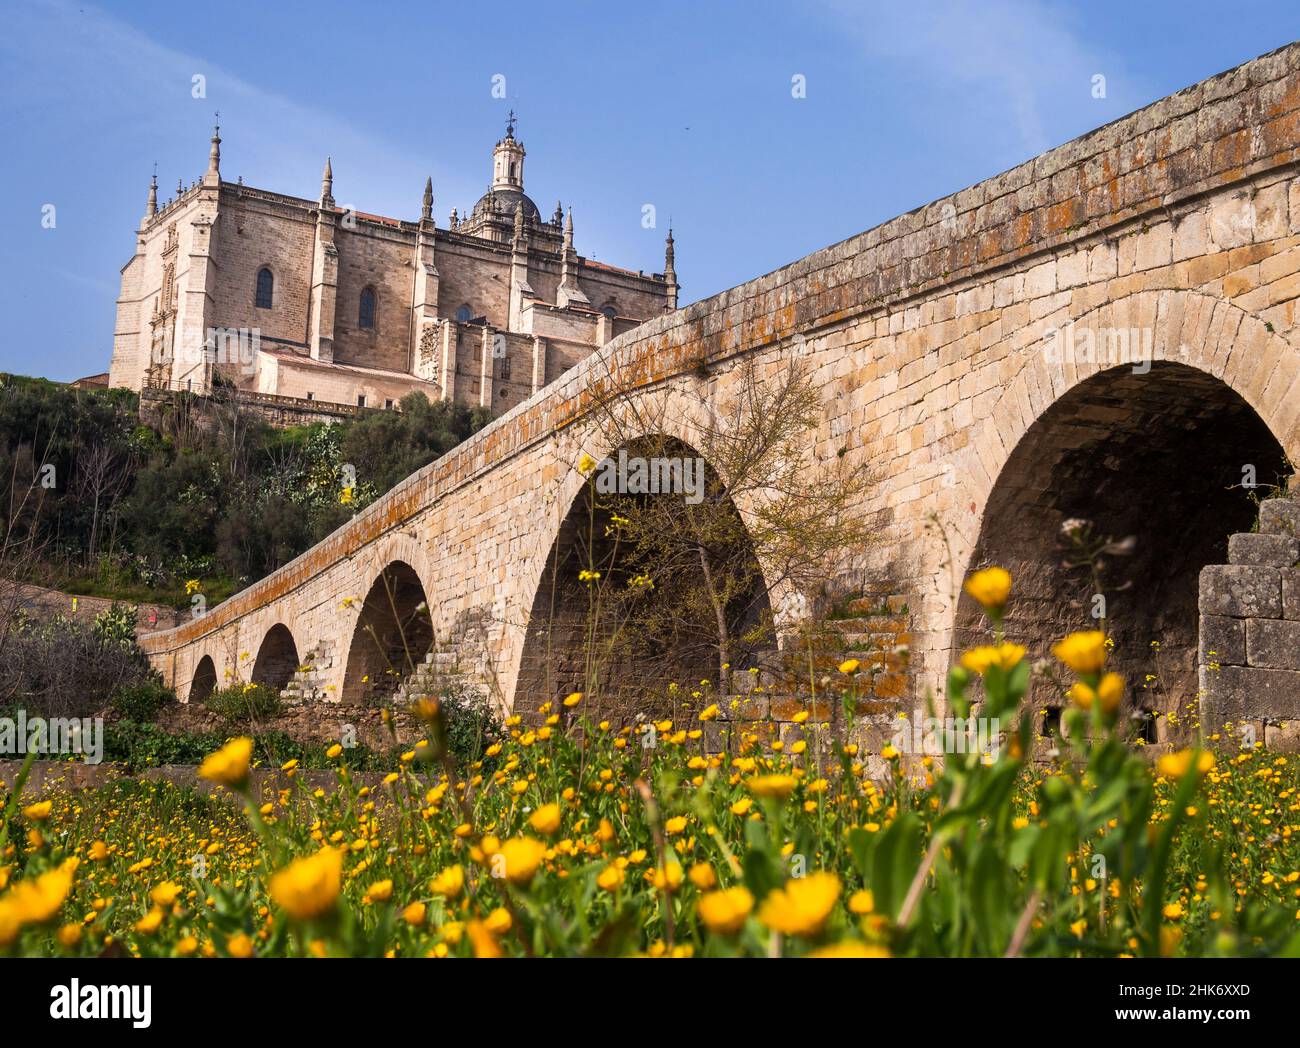 Puente de piedra y Catedral de Santa María de la Asunción. Coria. Cáceres. Extremadura. España Stock Photo